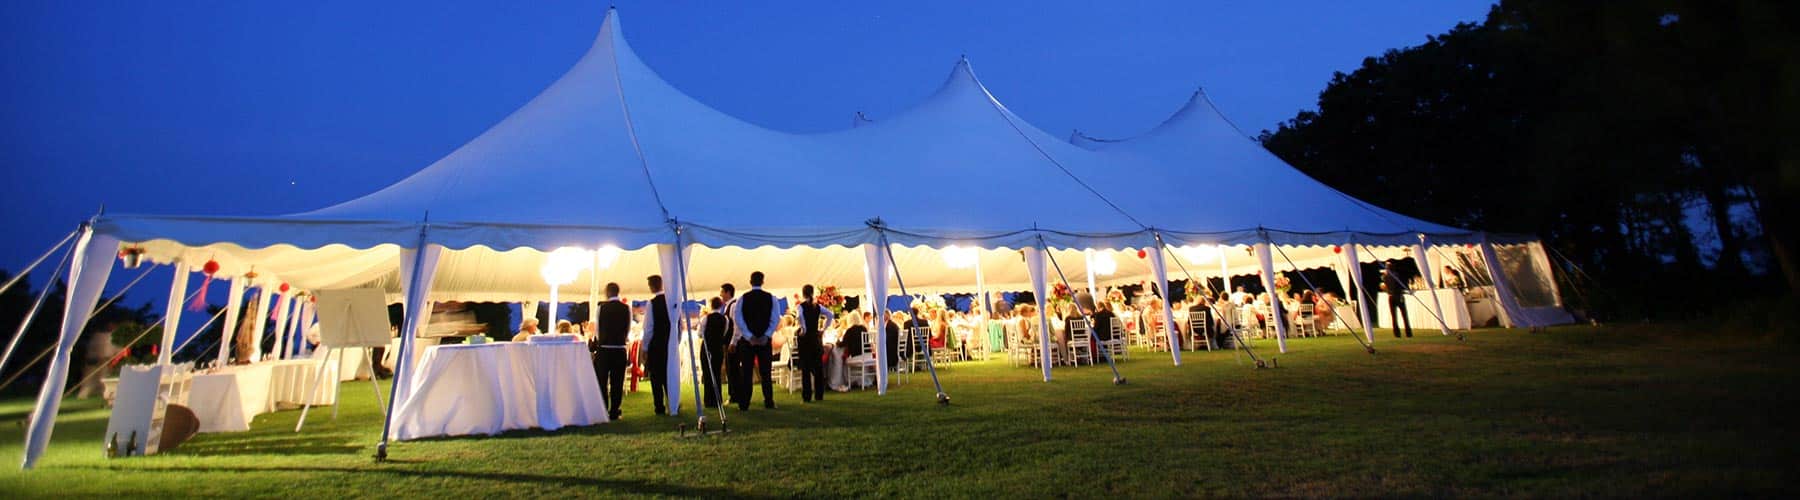 Wedding Tent Renatls Abc Fabulous Events Party Rentals